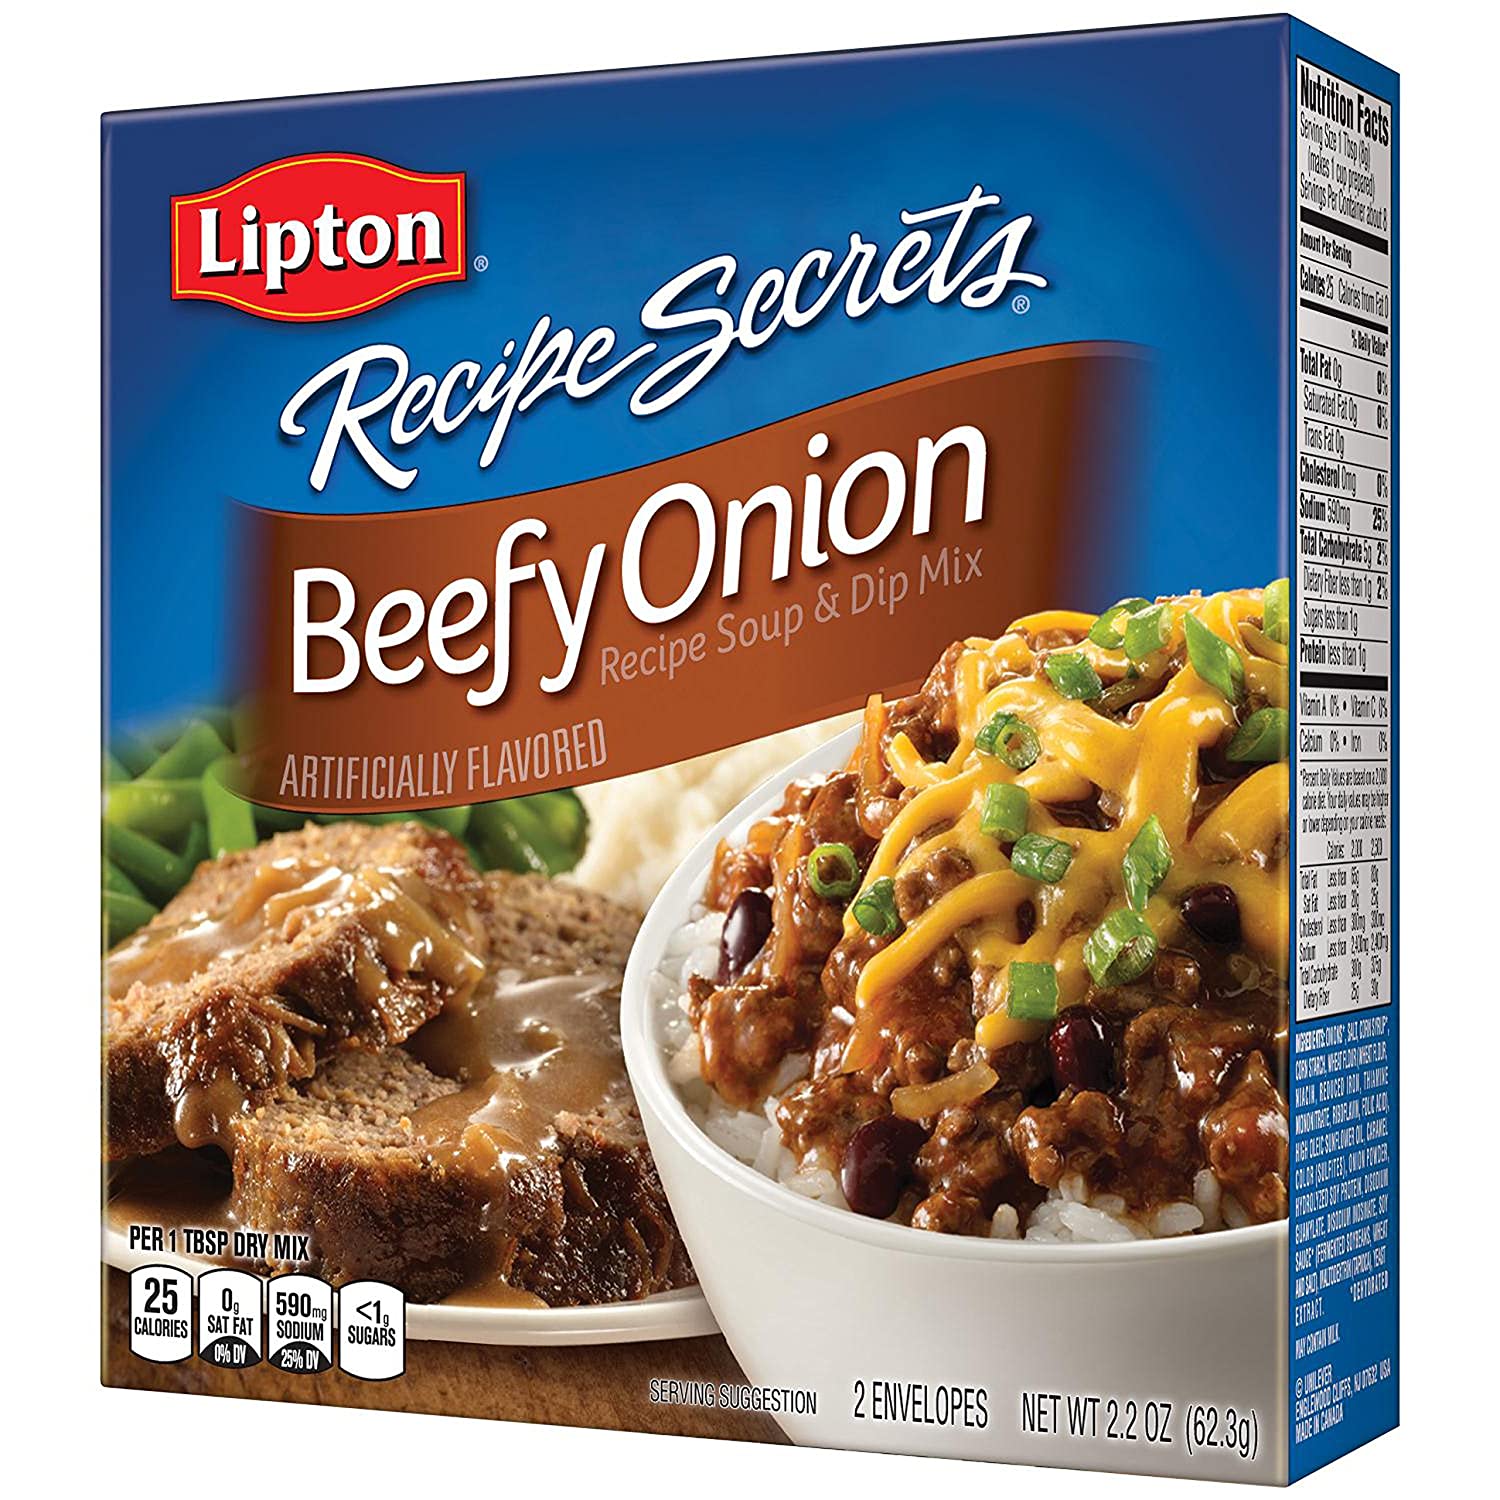 Lipton Onion Soup Mix Hamburger Steak Recipe